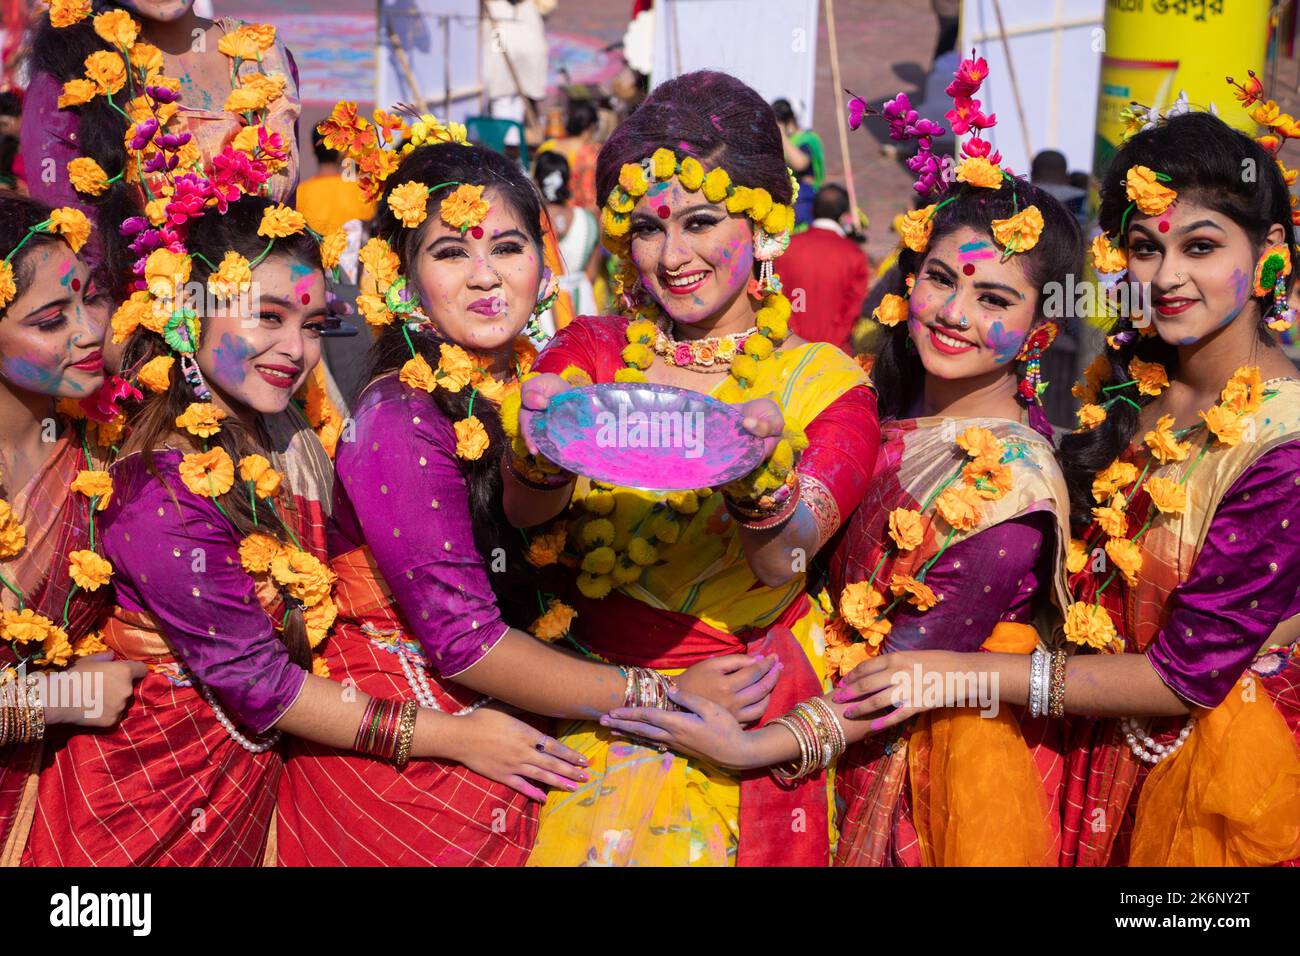 Les femmes portent des robes traditionnelles avec des ornements floraux et se présentent au Festival de printemps, le premier jour du printemps du mois bengali ''Falgun''. Banque D'Images